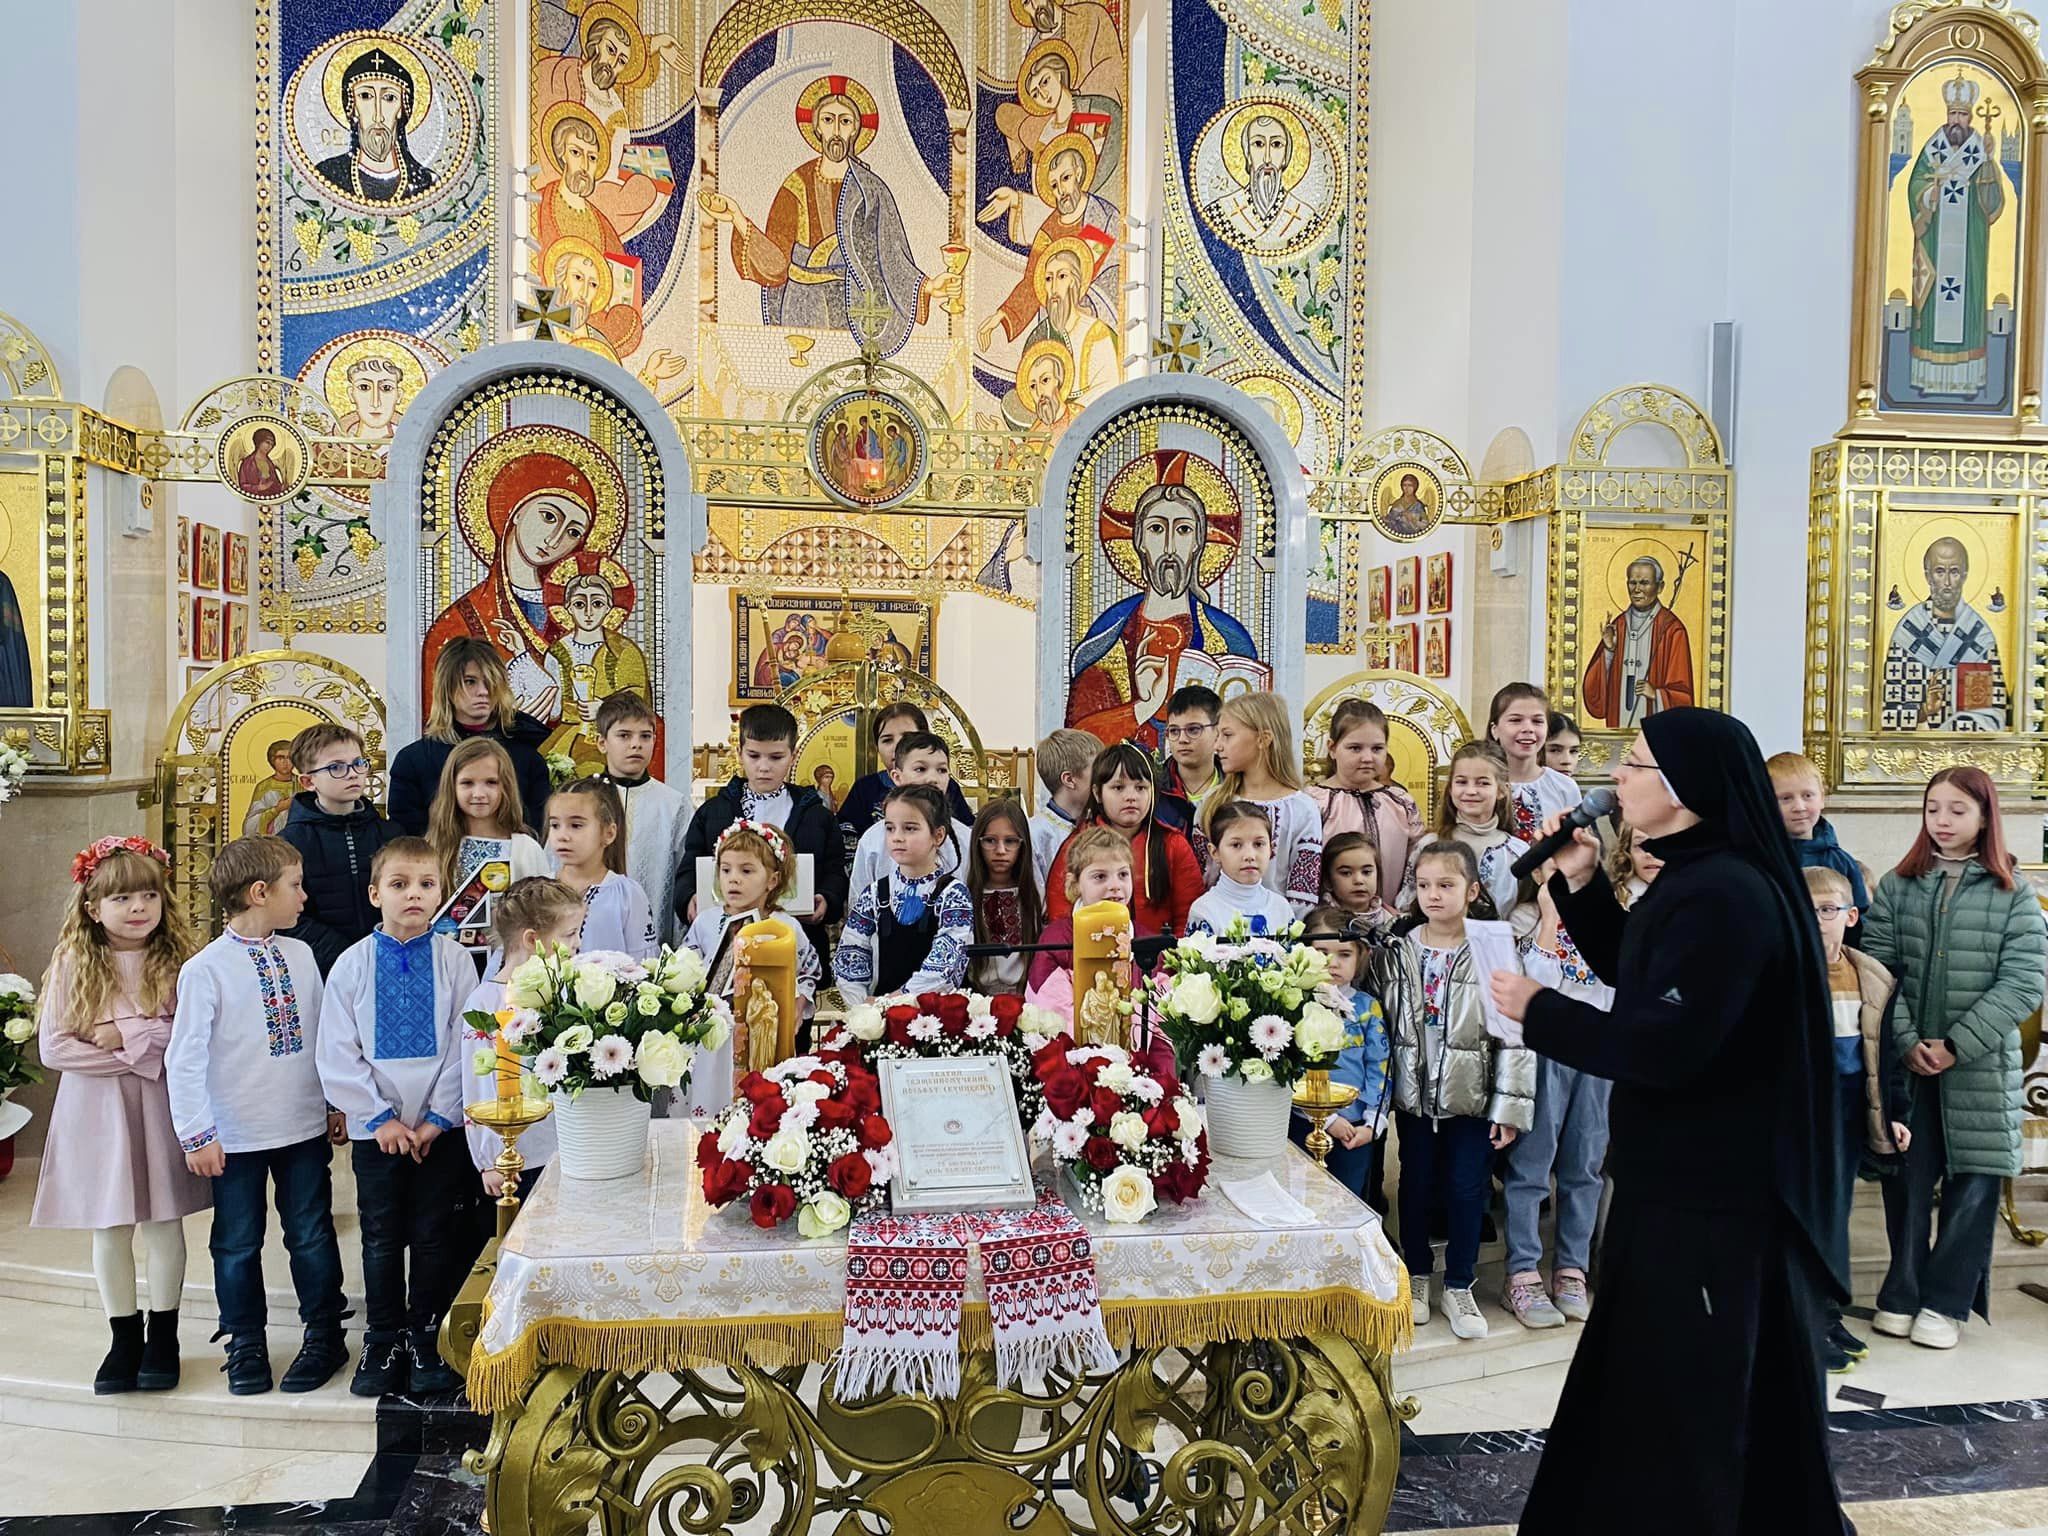 Ucrania 400o aniversario del martirio de San Josafat - IVE America